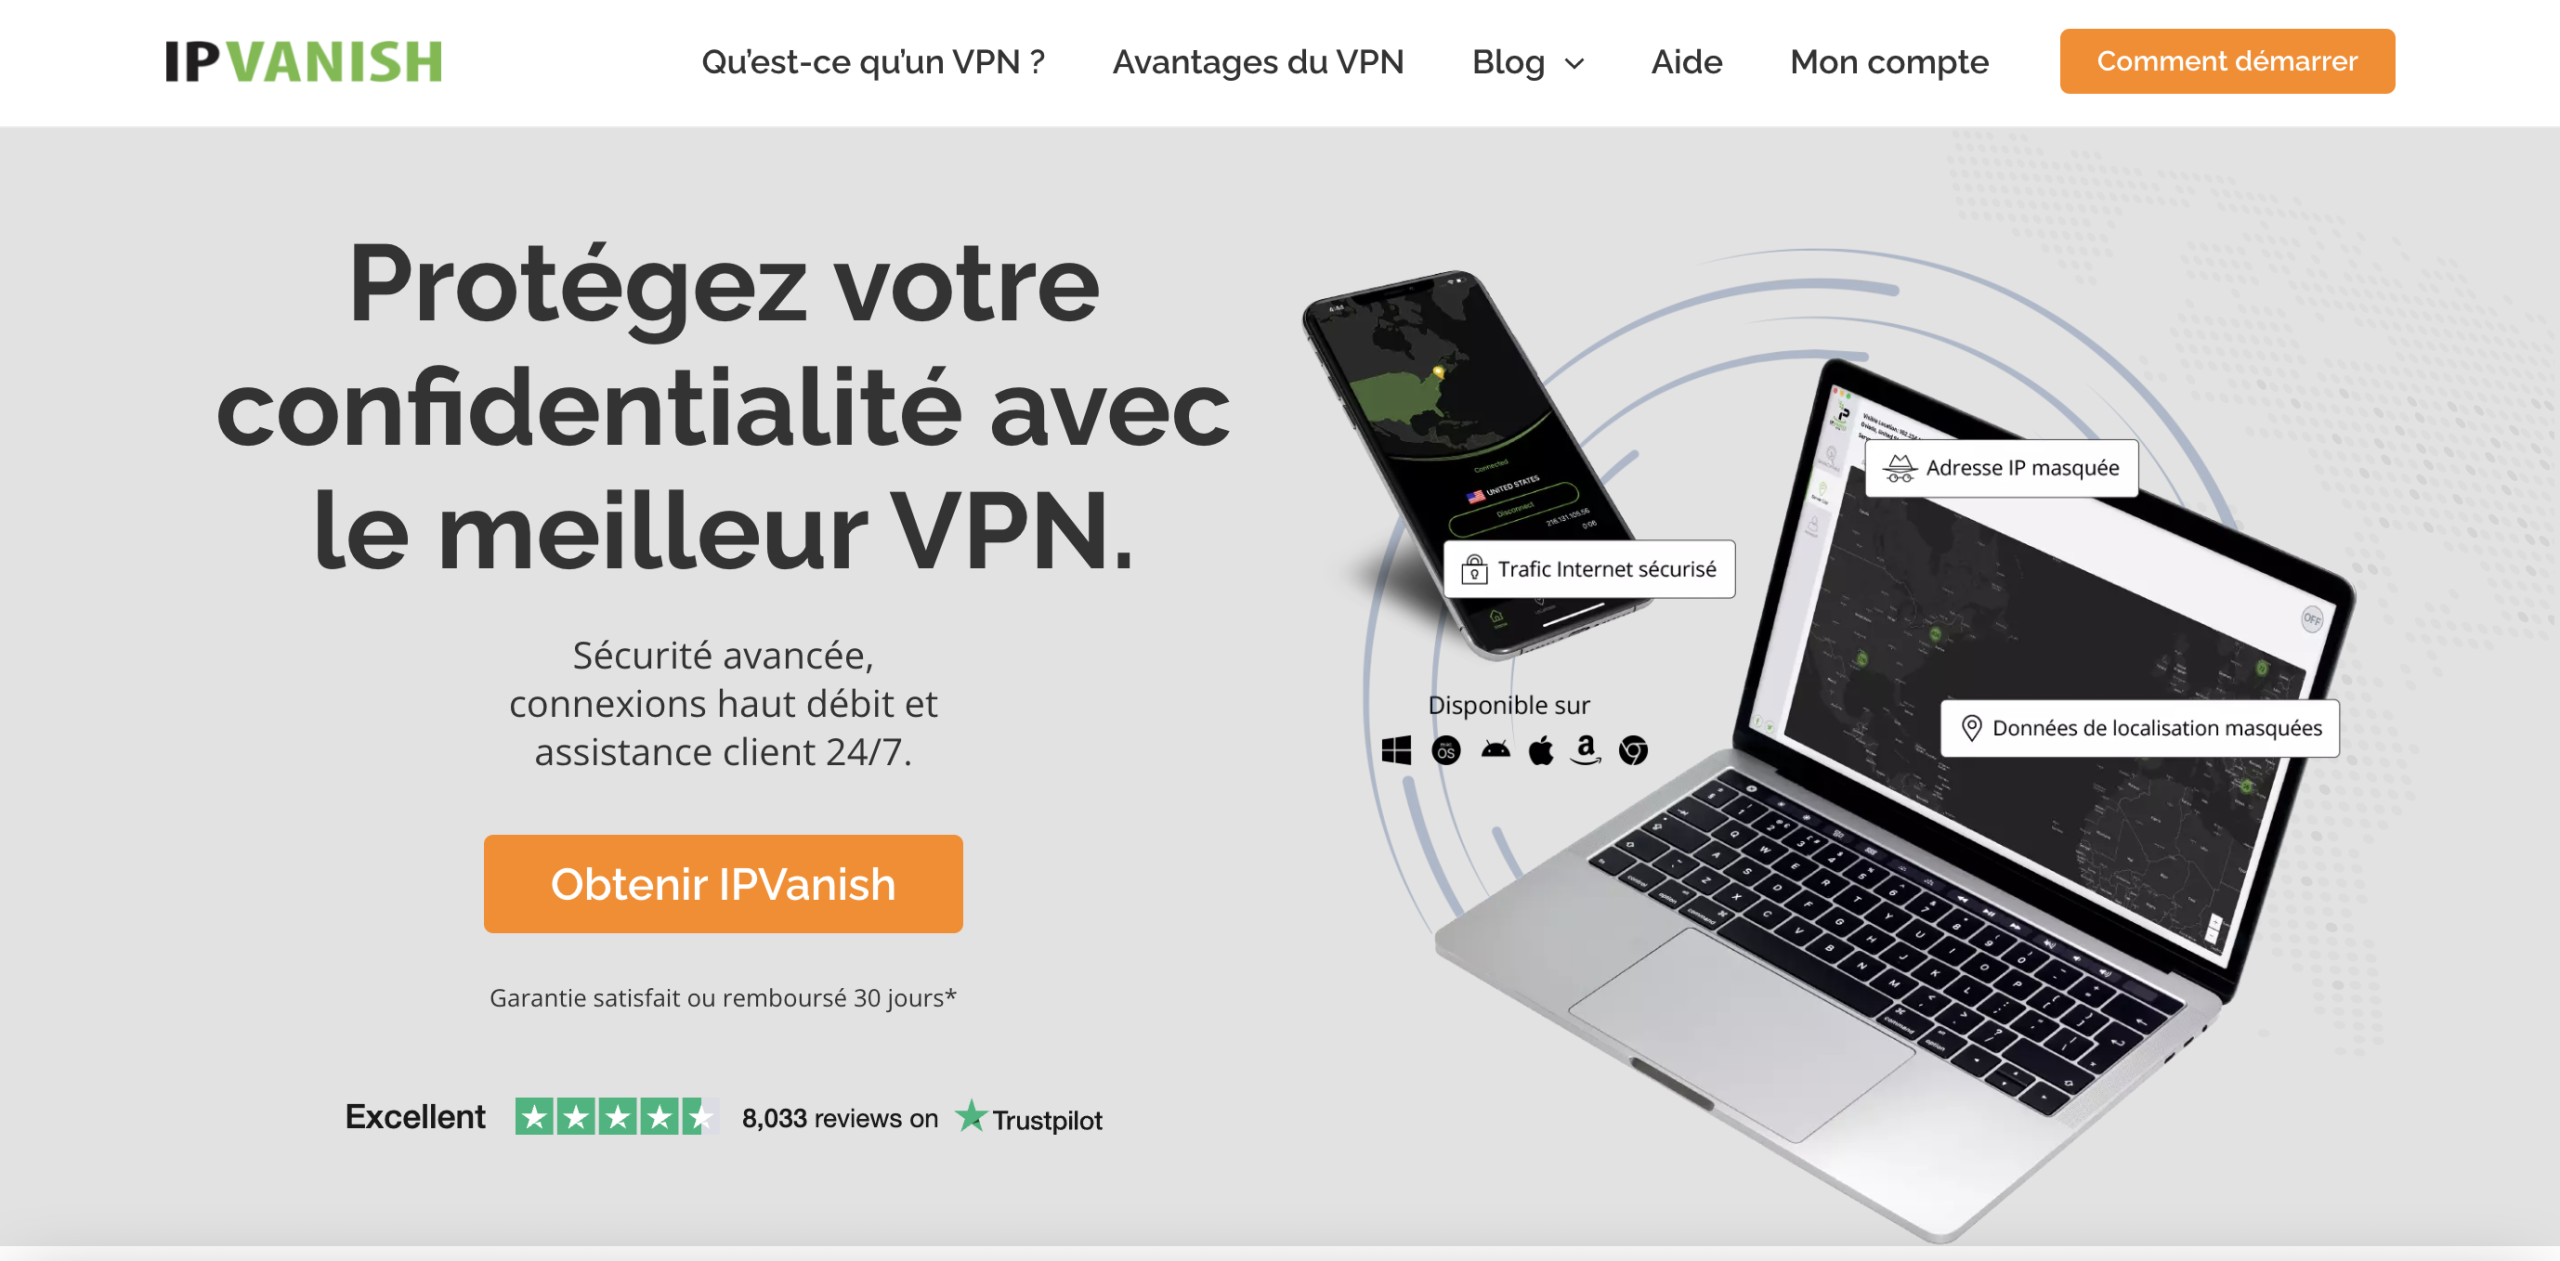 6 - IPVanish : Un VPN au cryptage militaire